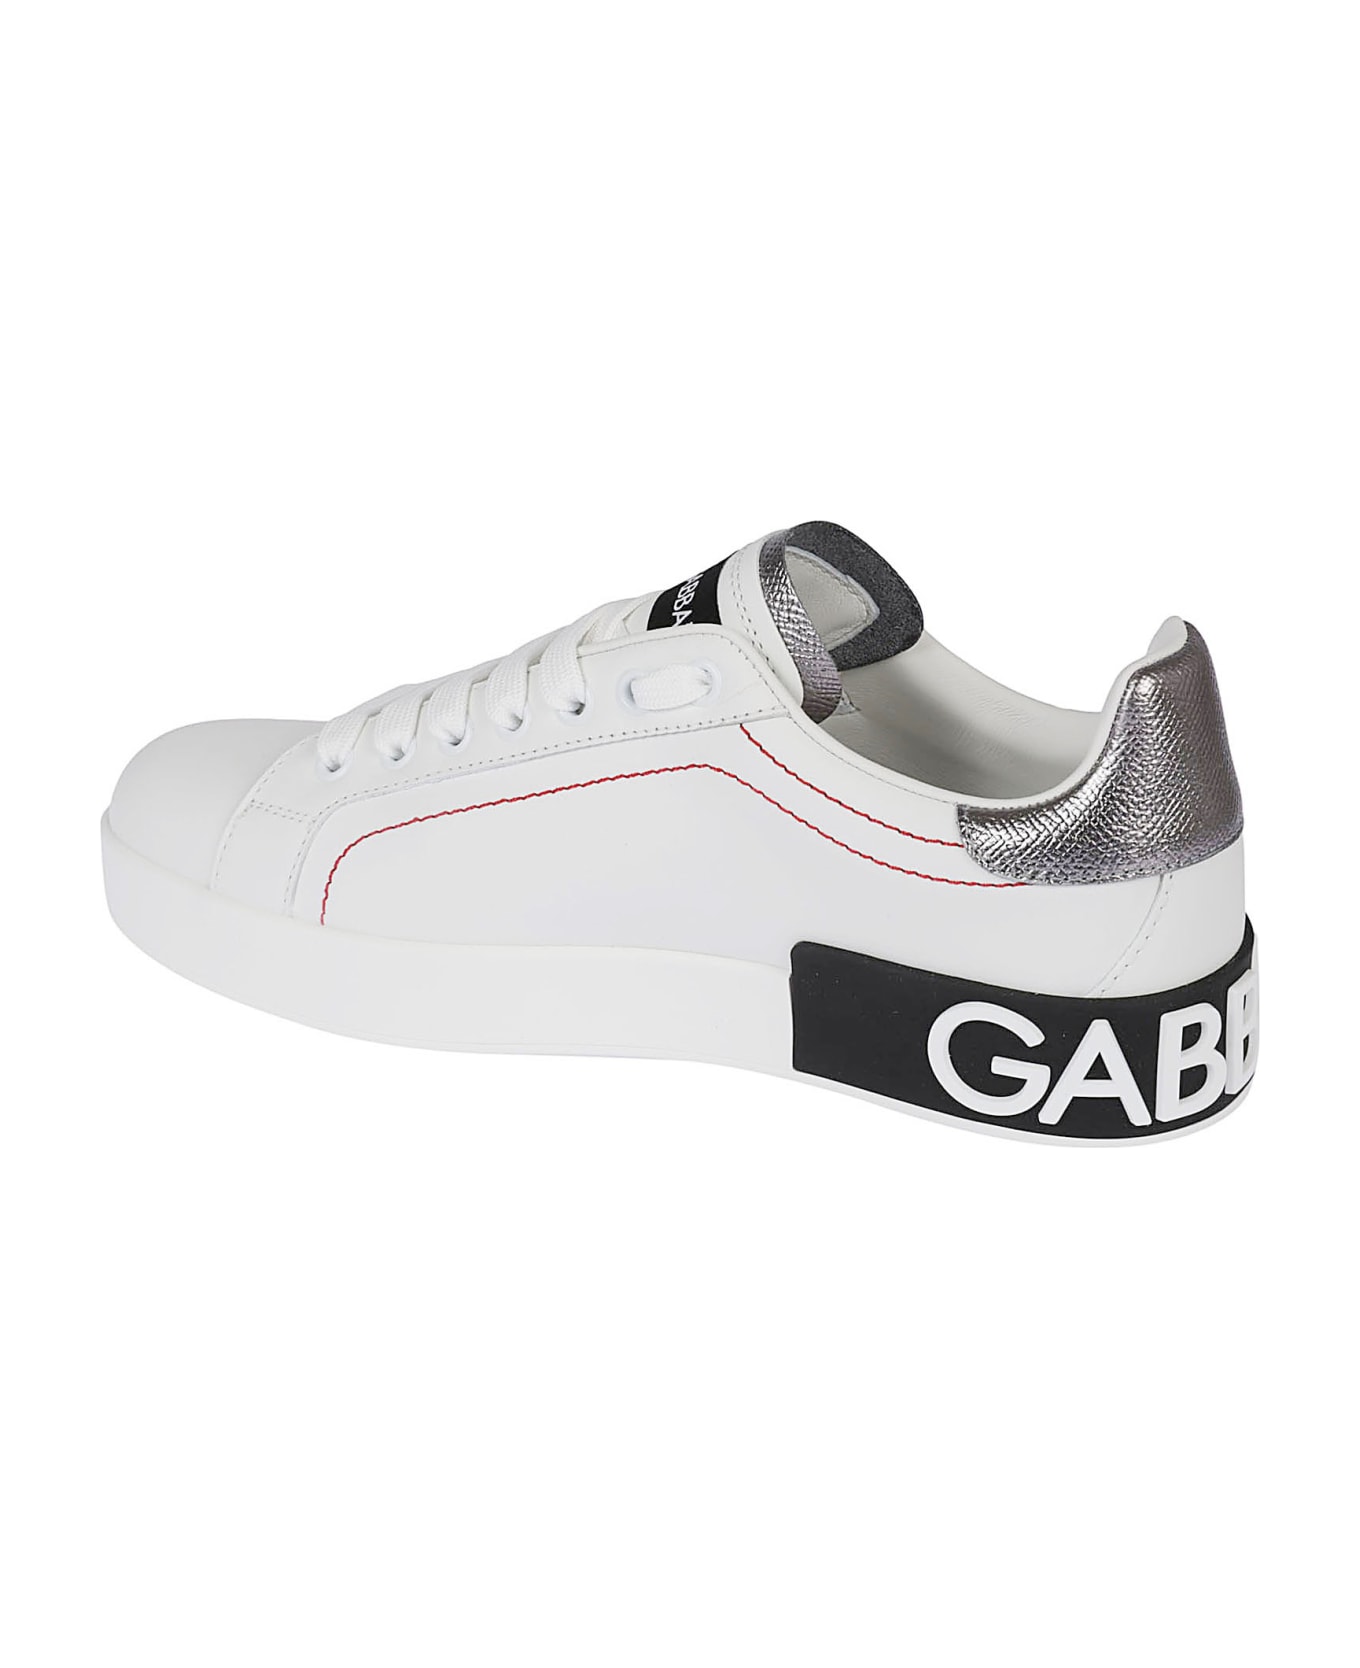 Dolce & Gabbana Portofino Sneakers - White/Silver